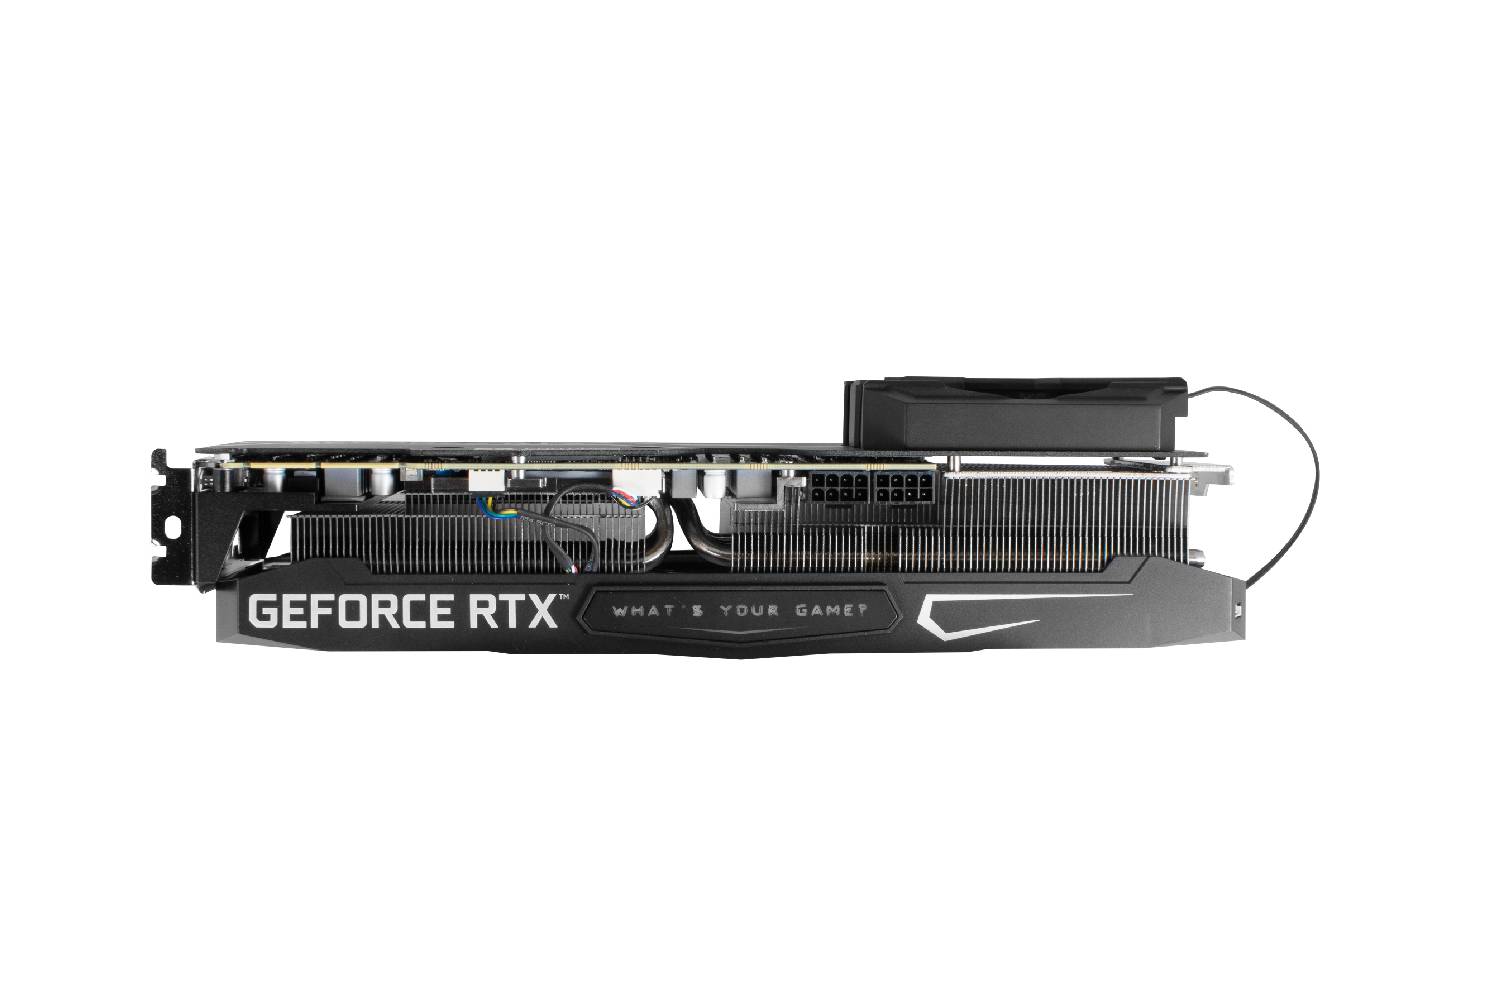 Galax RTX 3090 SG (1 click OC ) 24GB GDDR6X Graphics Card